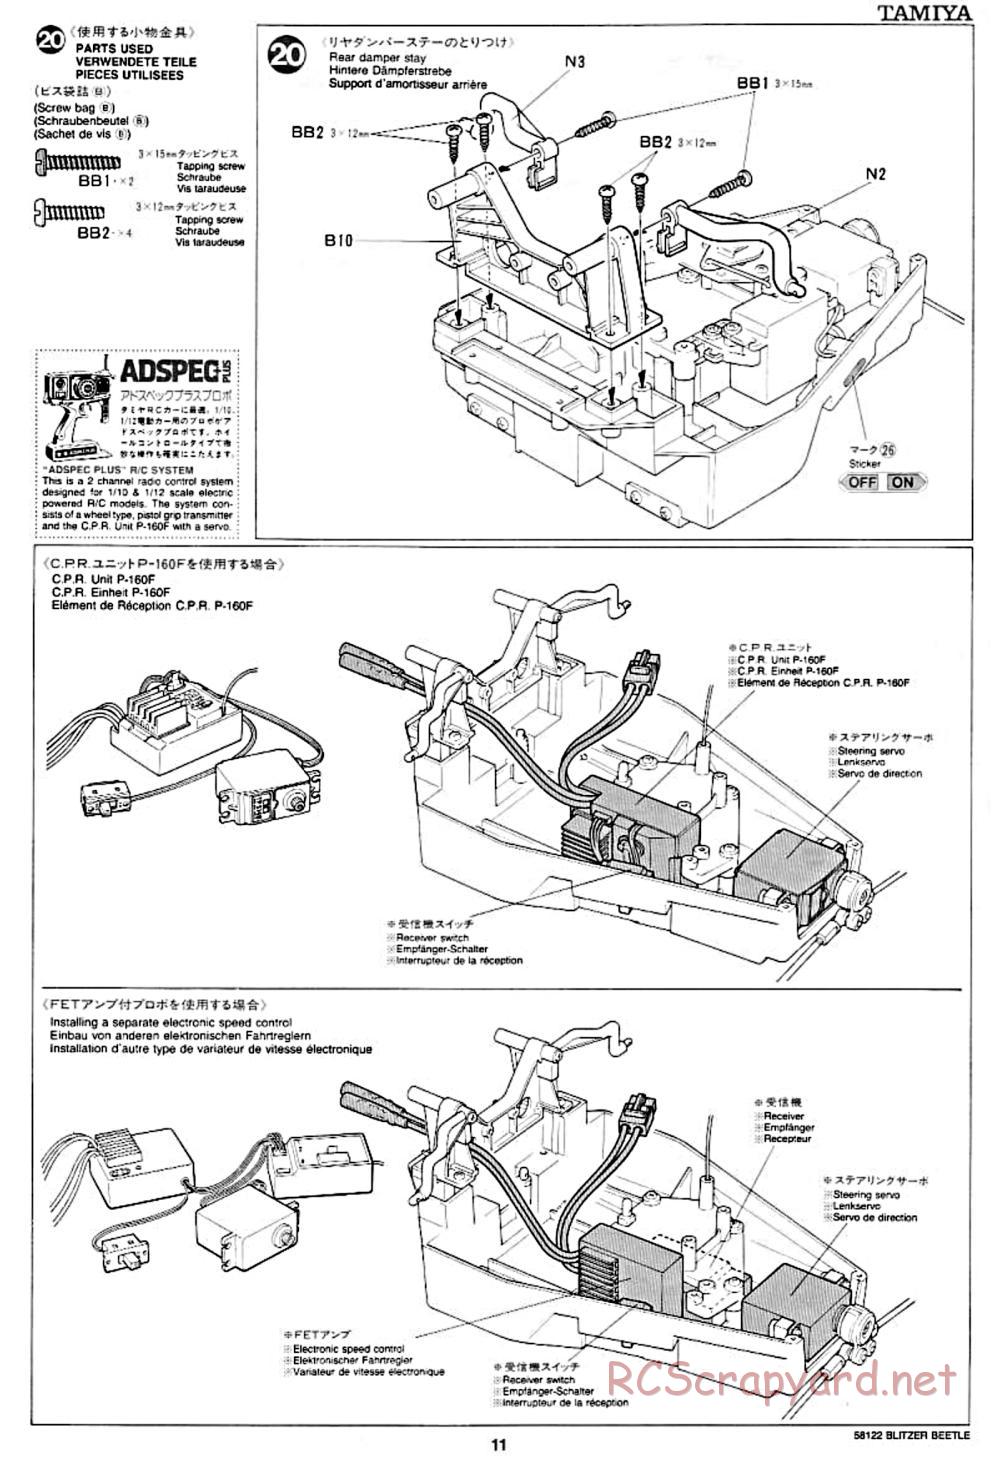 Tamiya - Blitzer Beetle Chassis - Manual - Page 11